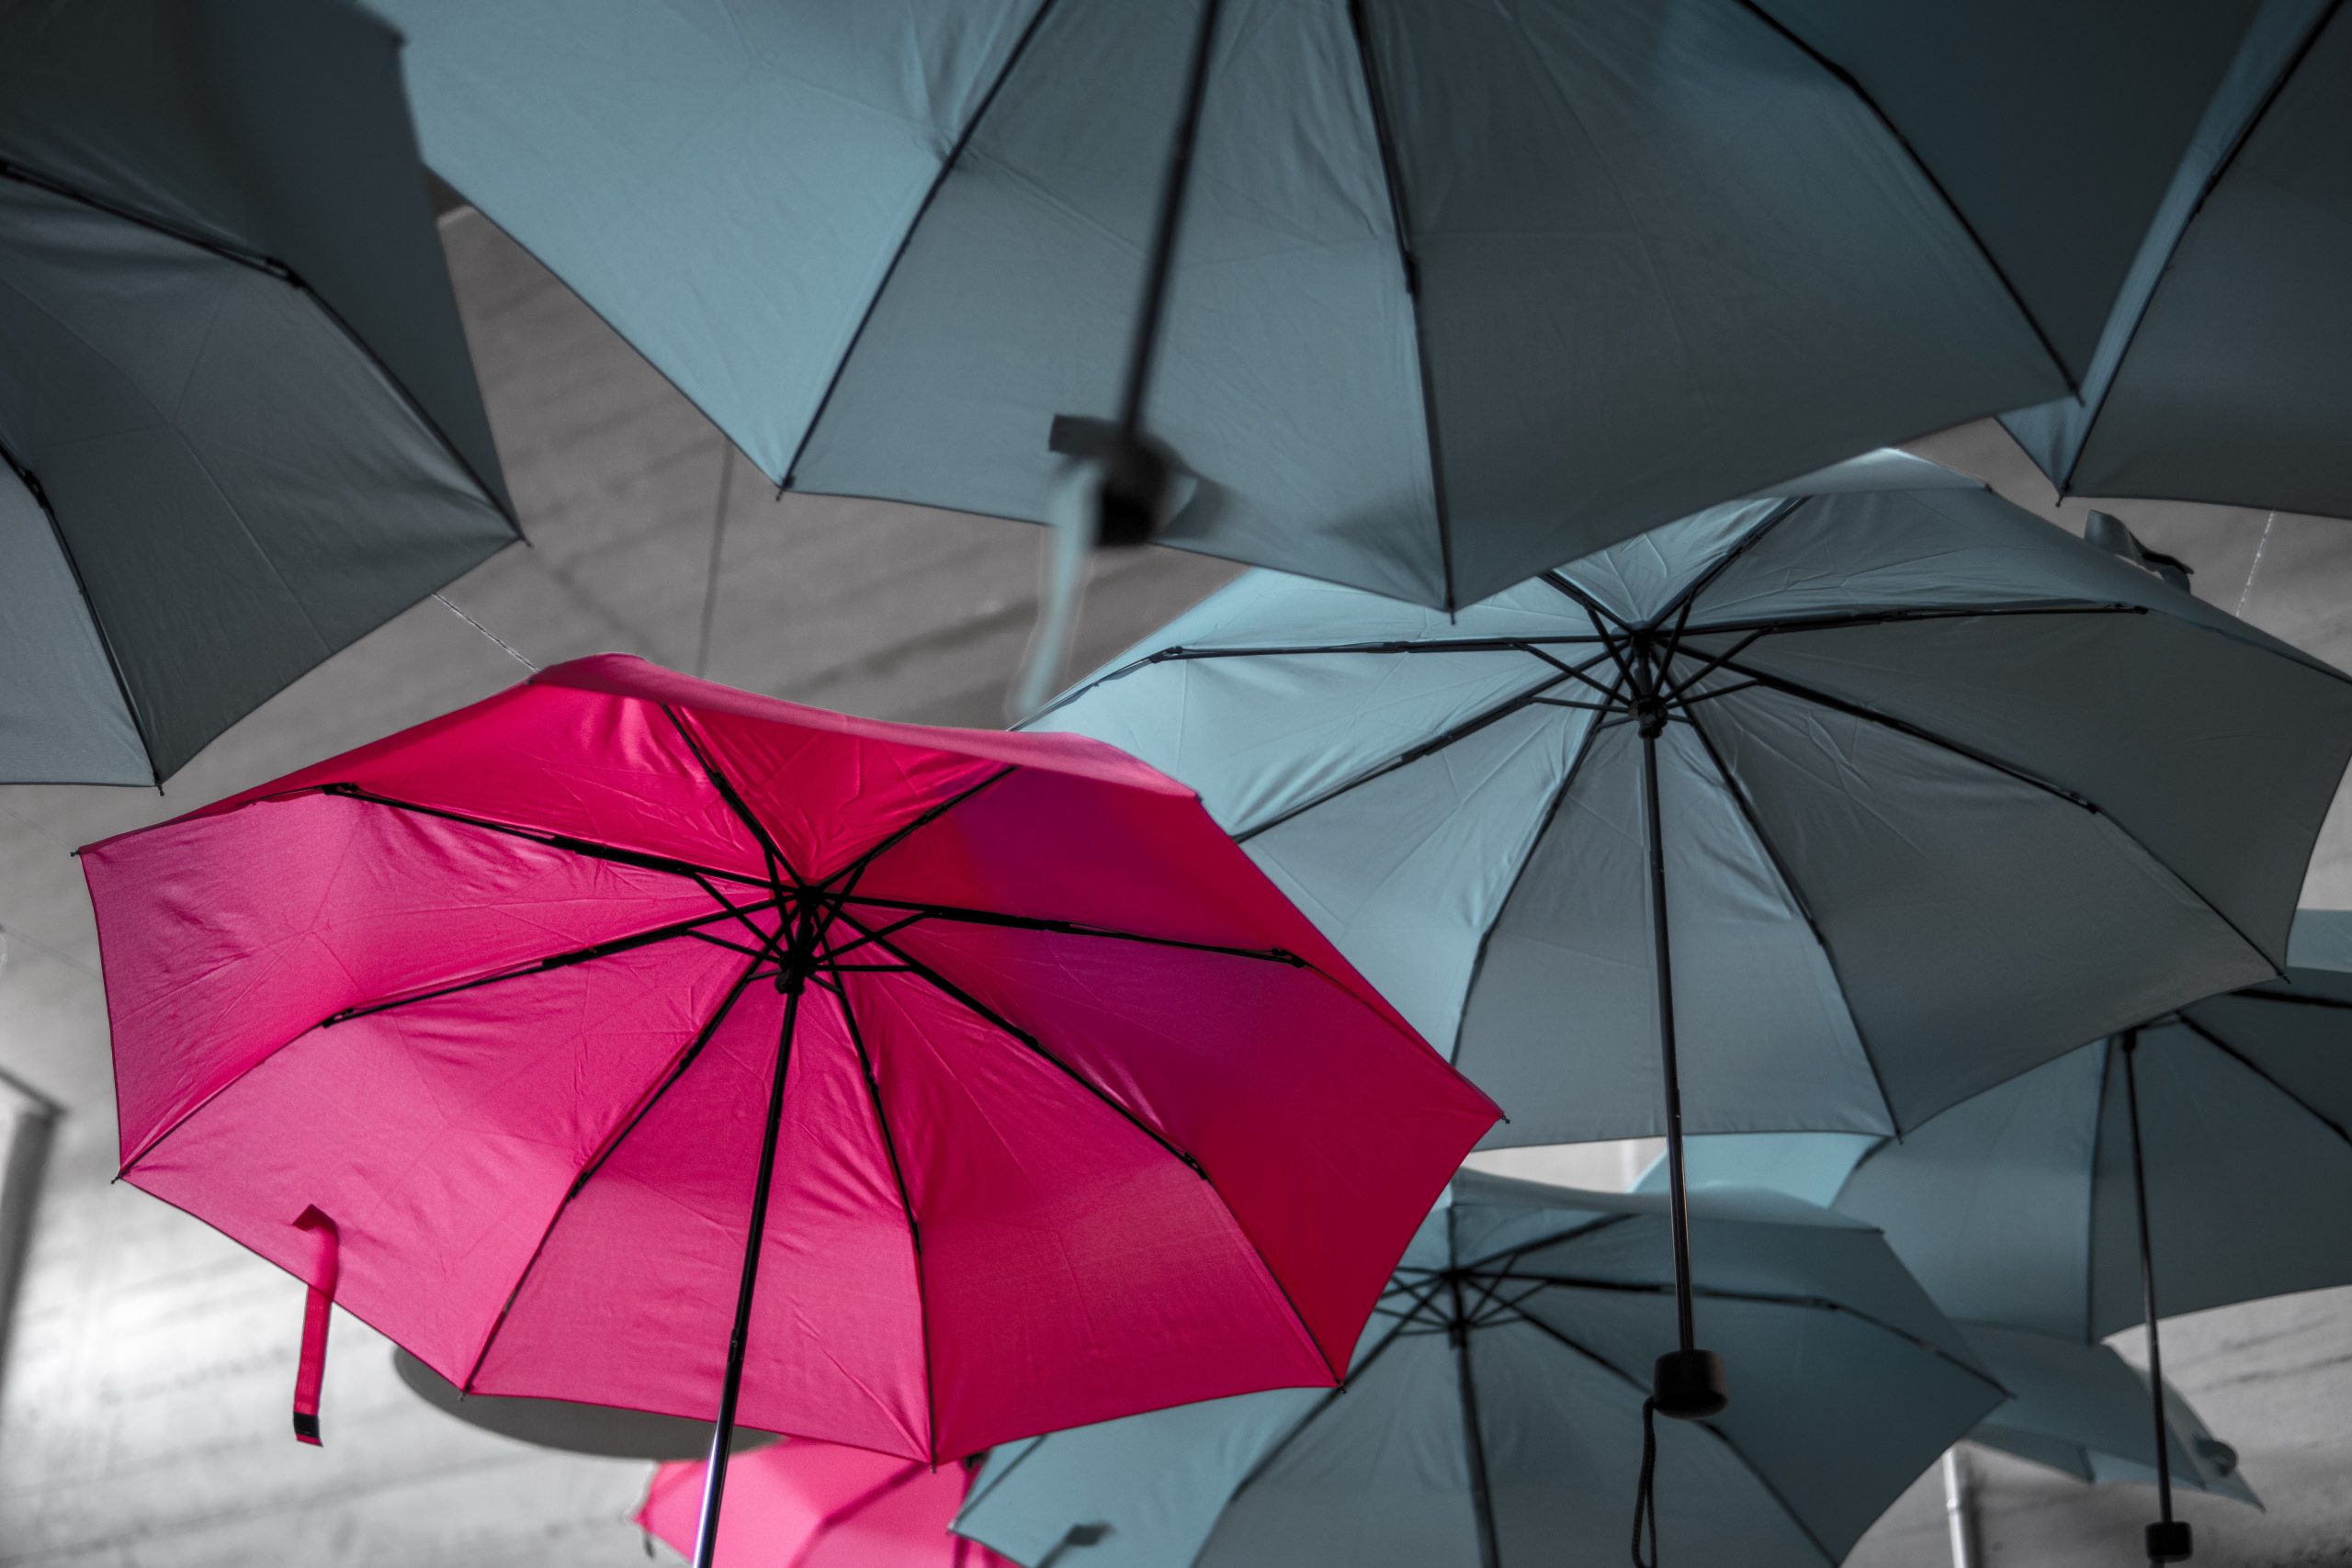 Pink Umbrella In the Midst of Black Umbrellas